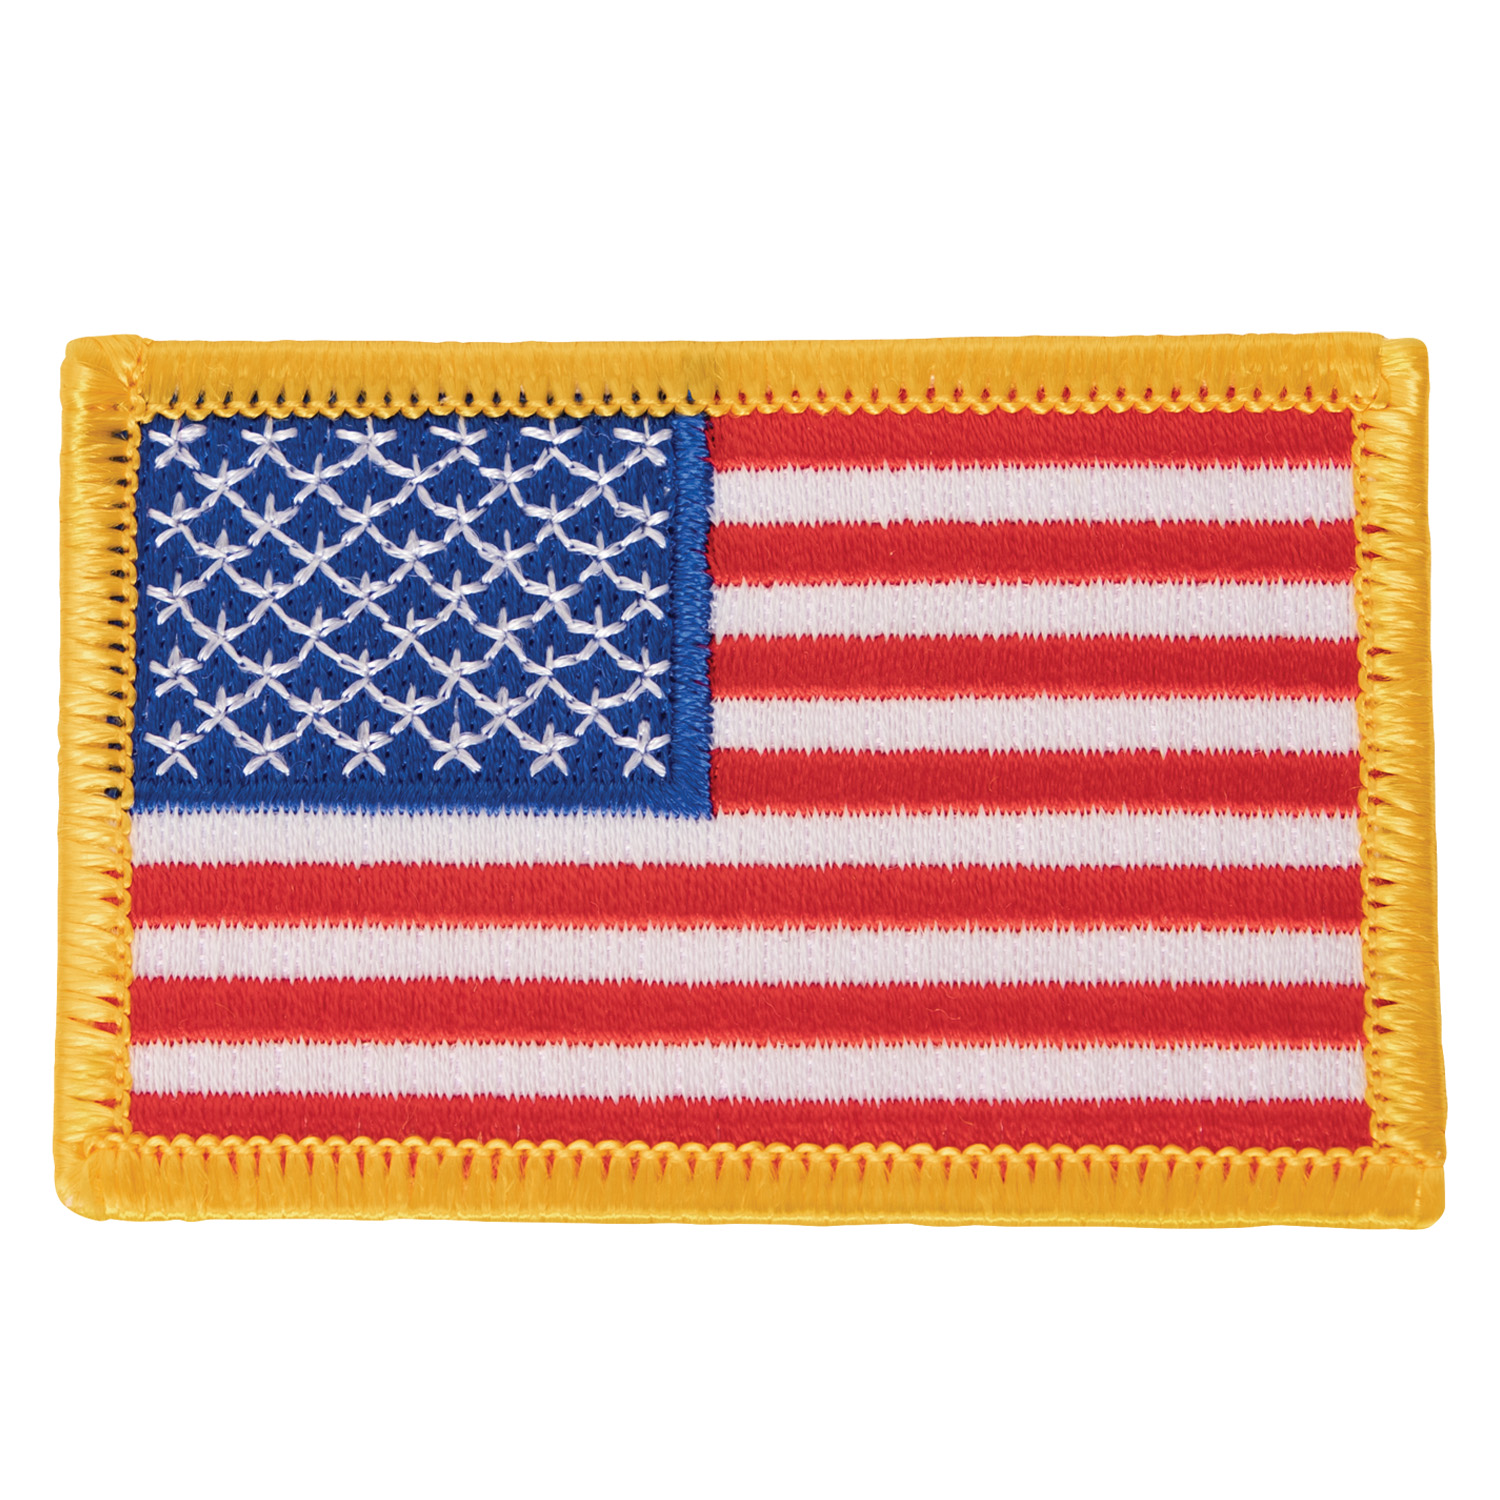 nášivka US vlajka 5x7,5 cm žlutý okraj